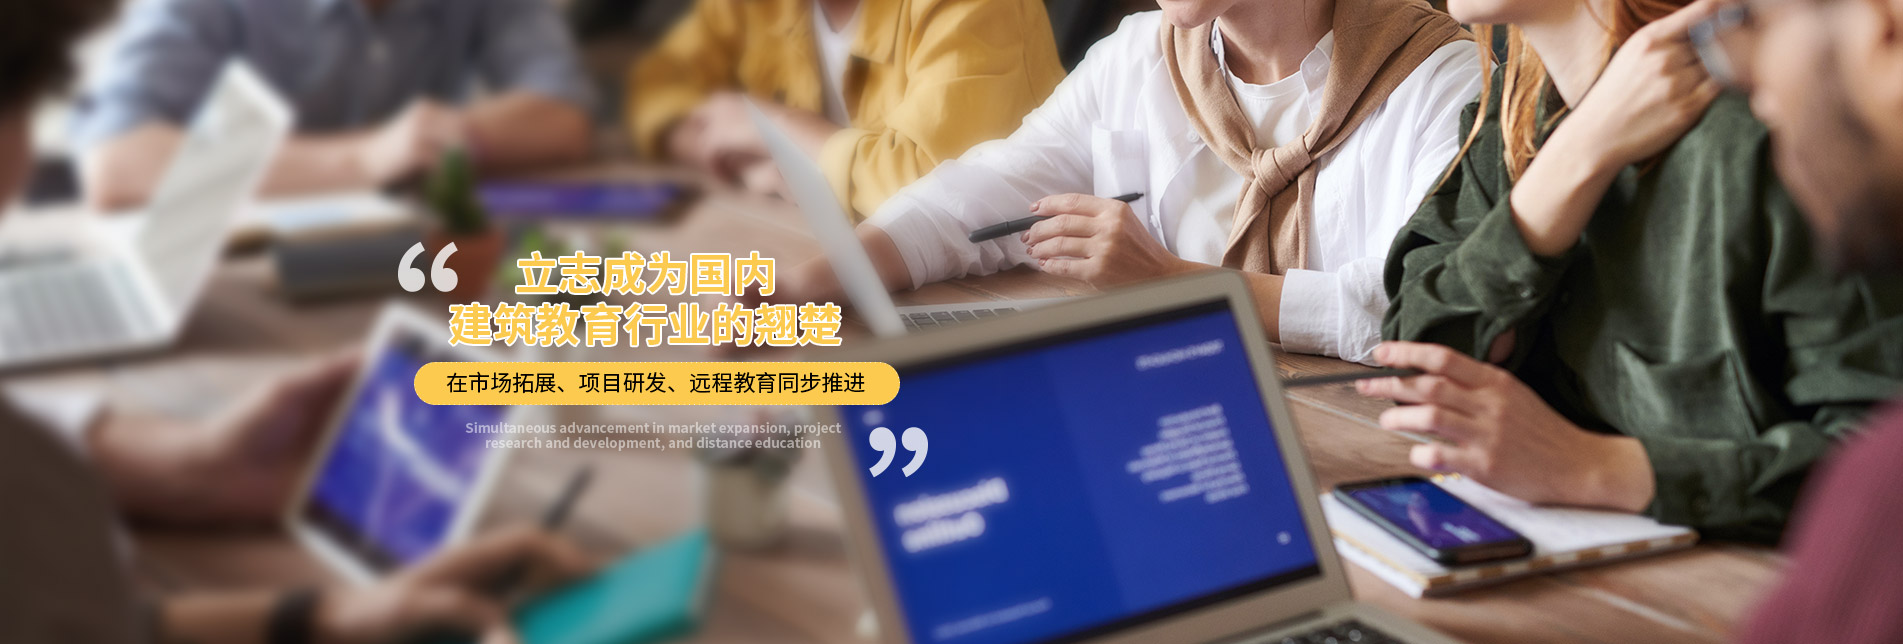 上海遜敏教育科技有限公司